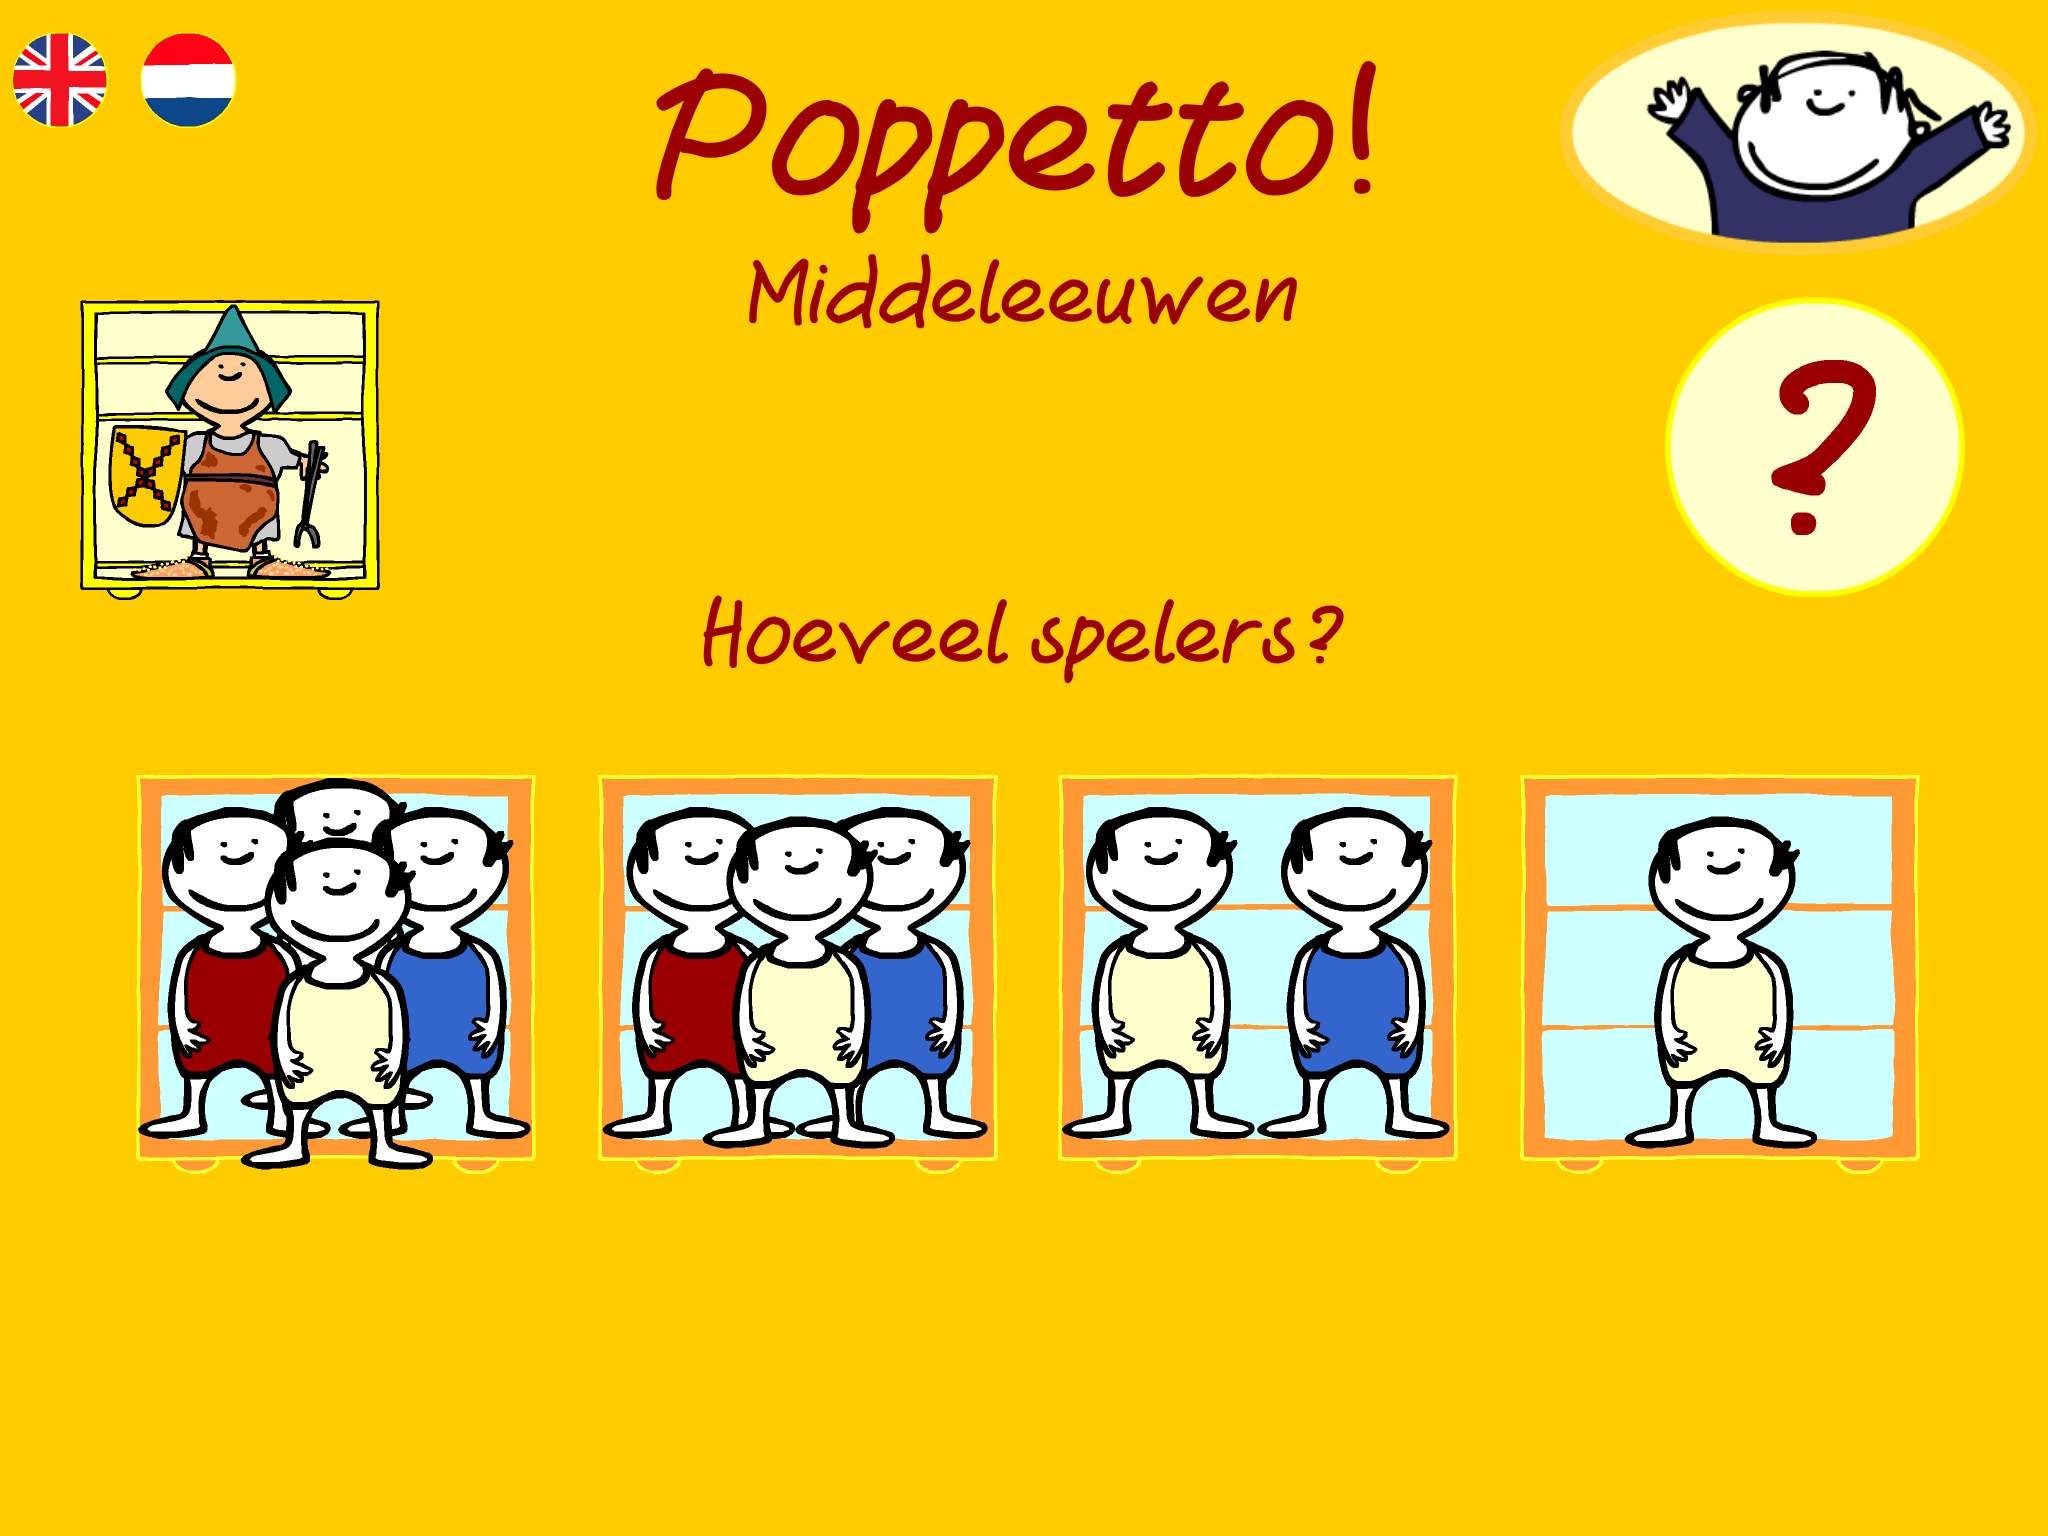 PoppettoMiddeleeuwen